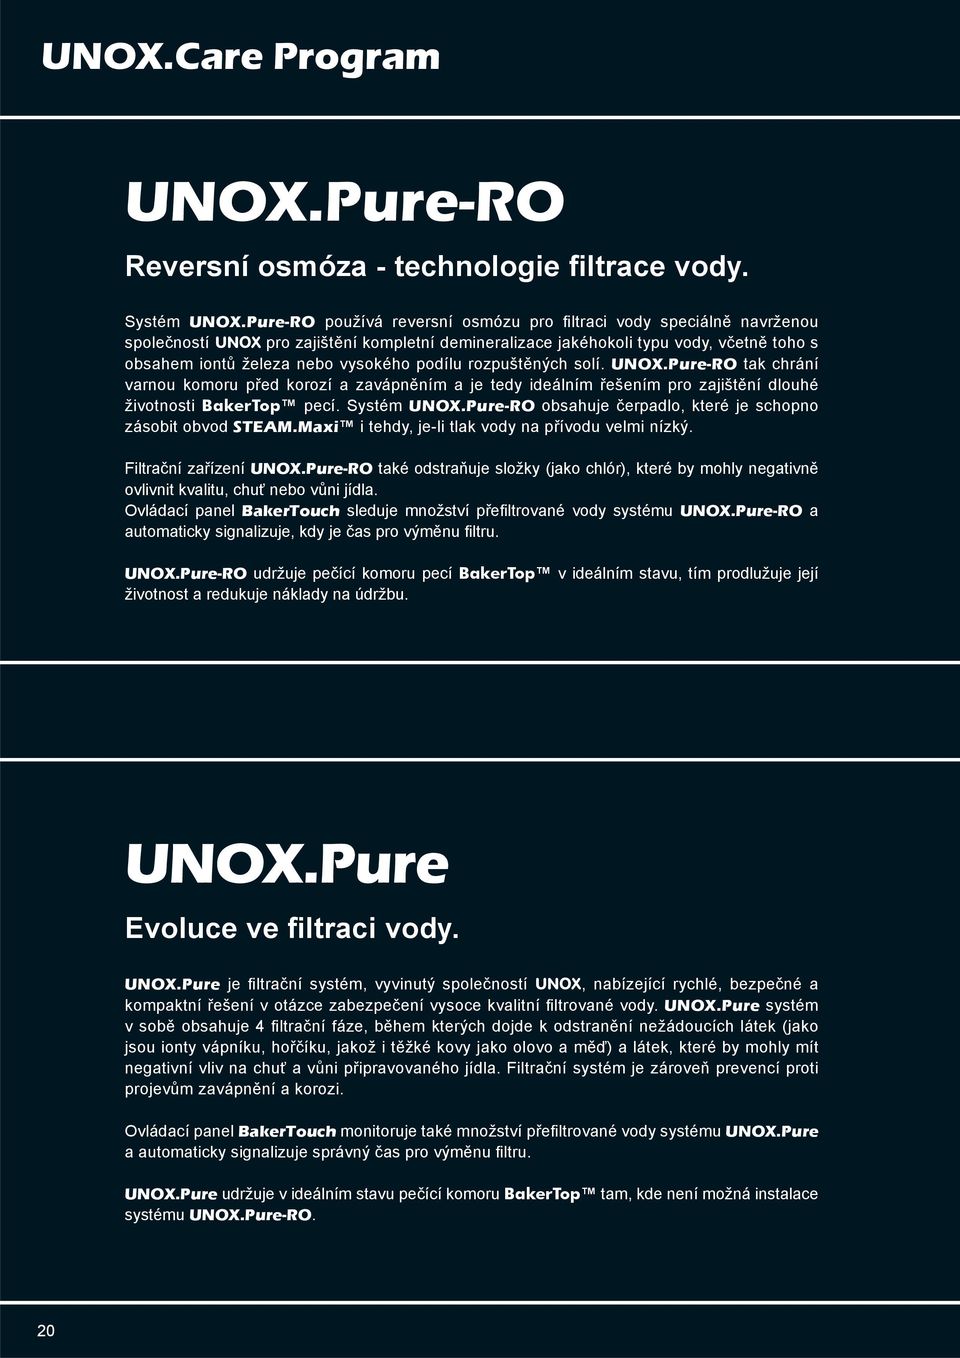 podílu rozpuštěných solí. UNOX.Pure-RO tak chrání varnou komoru před korozí a zavápněním a je tedy ideálním řešením pro zajištění dlouhé životnosti BakerTop pecí. Systém UNOX.